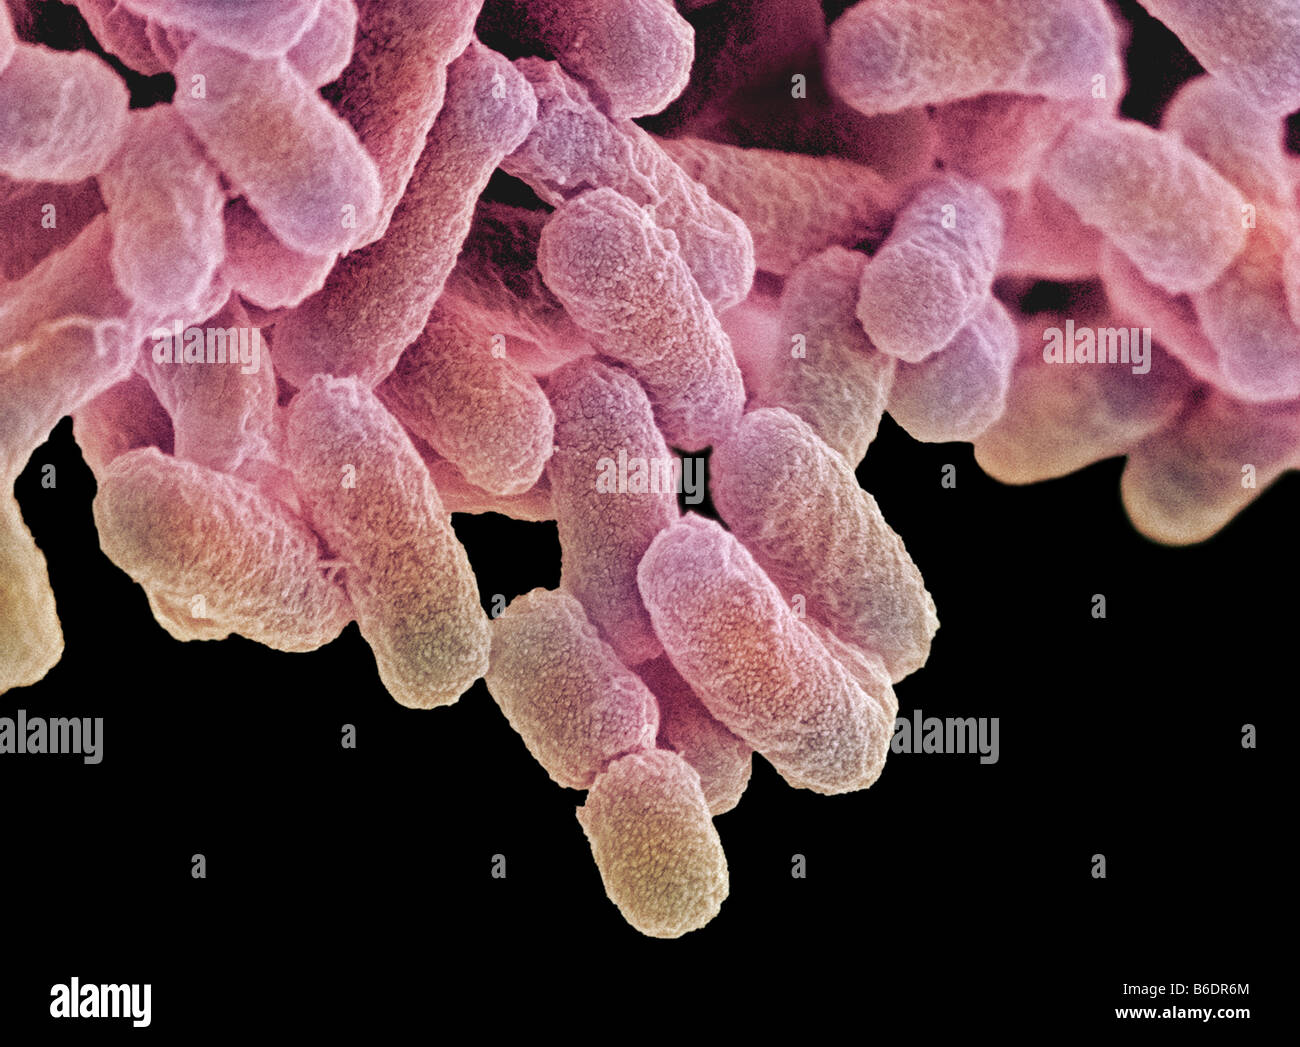 Escherichia coli son bacilos gram-negativos con forma de barra las  bacterias que forman parte de la flora normal del intestino humano  Fotografía de stock - Alamy